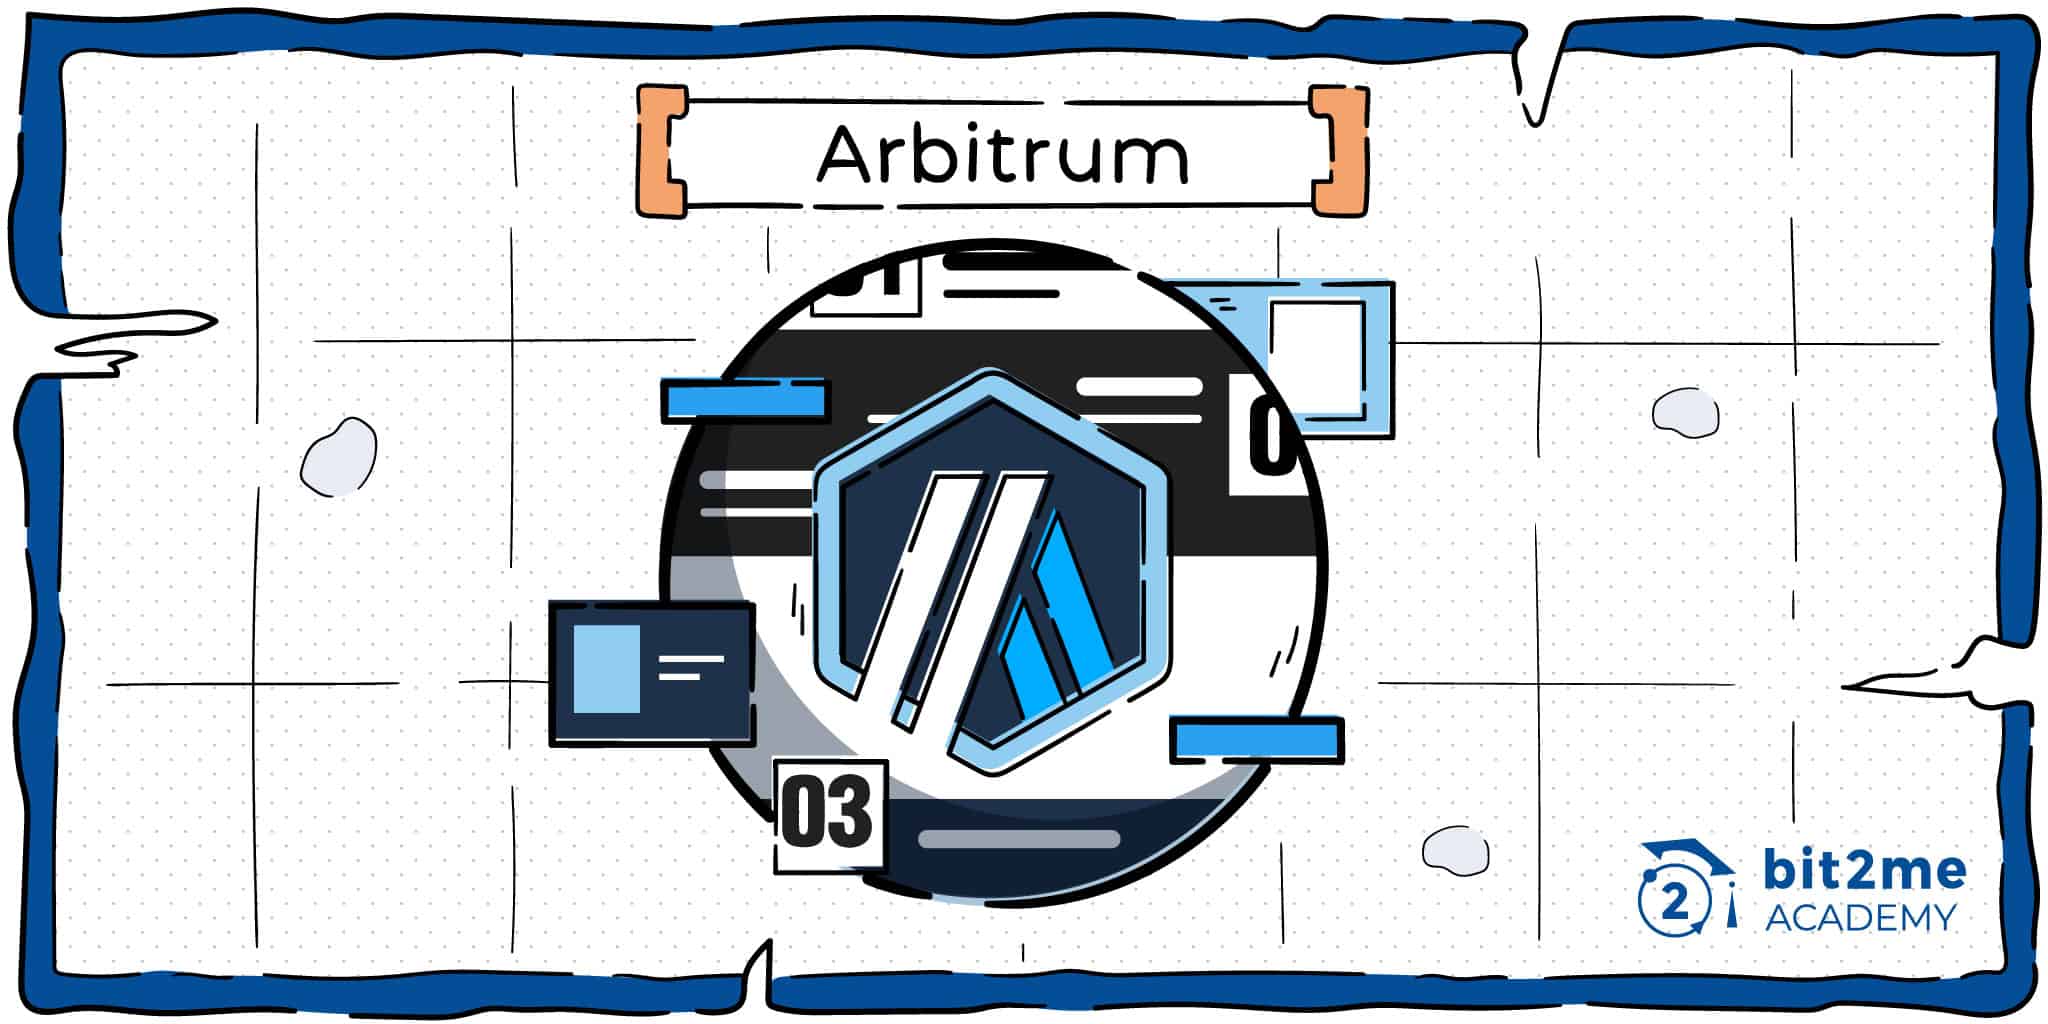 Arbitrum, protocolo de capa 2 de Ethereum basado en Optimistic Rollups